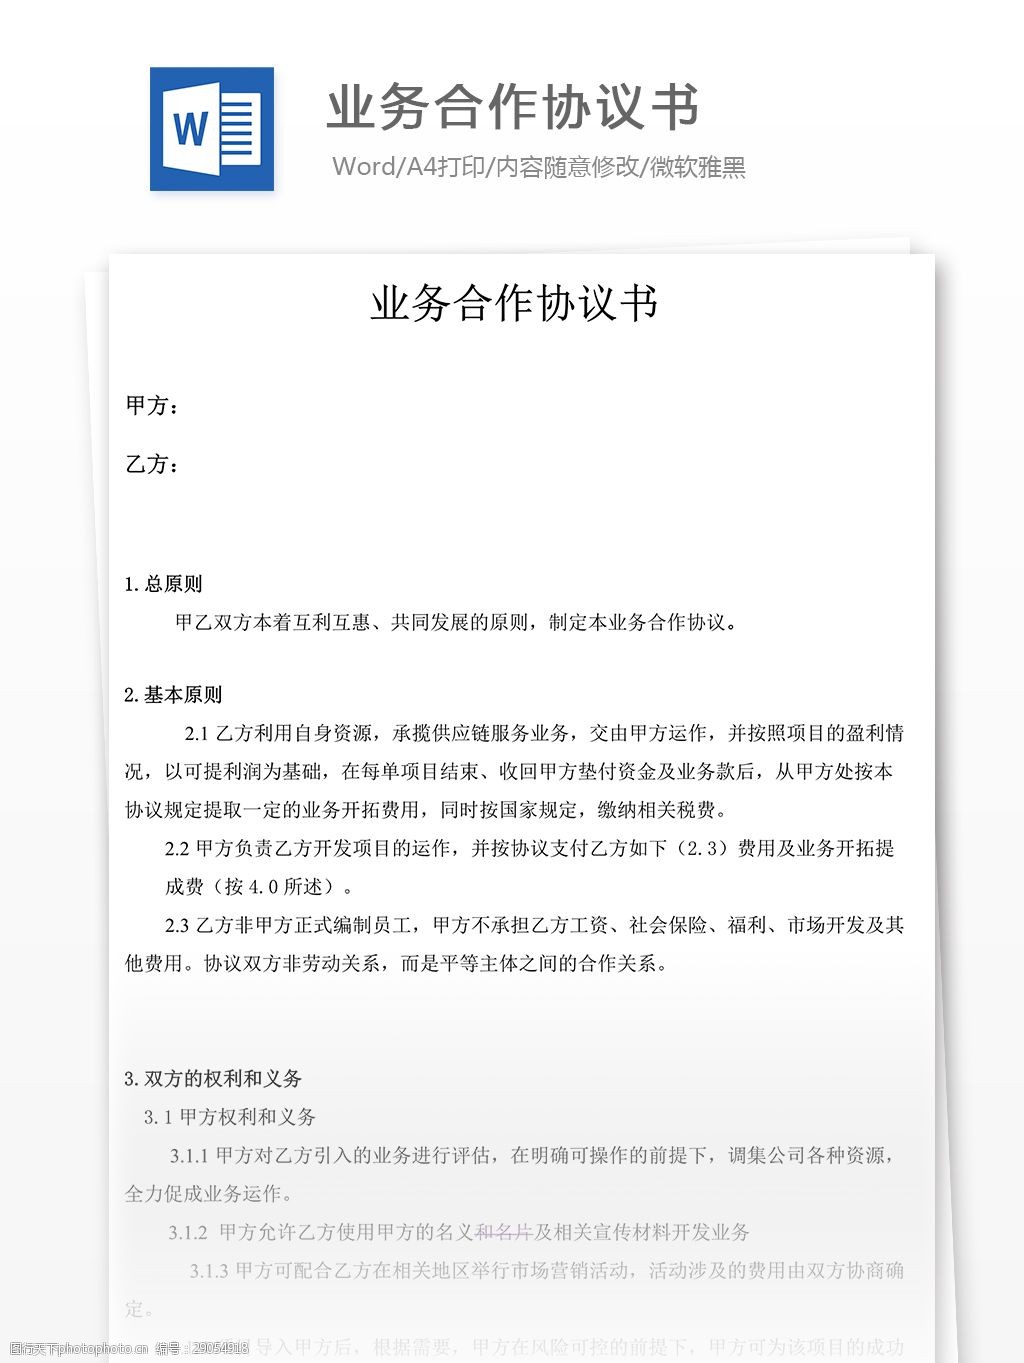 关于合作申报 2022 年度湖南省科学技术奖的公示 - 新闻中心 - 凯泉泵业集团有限公司